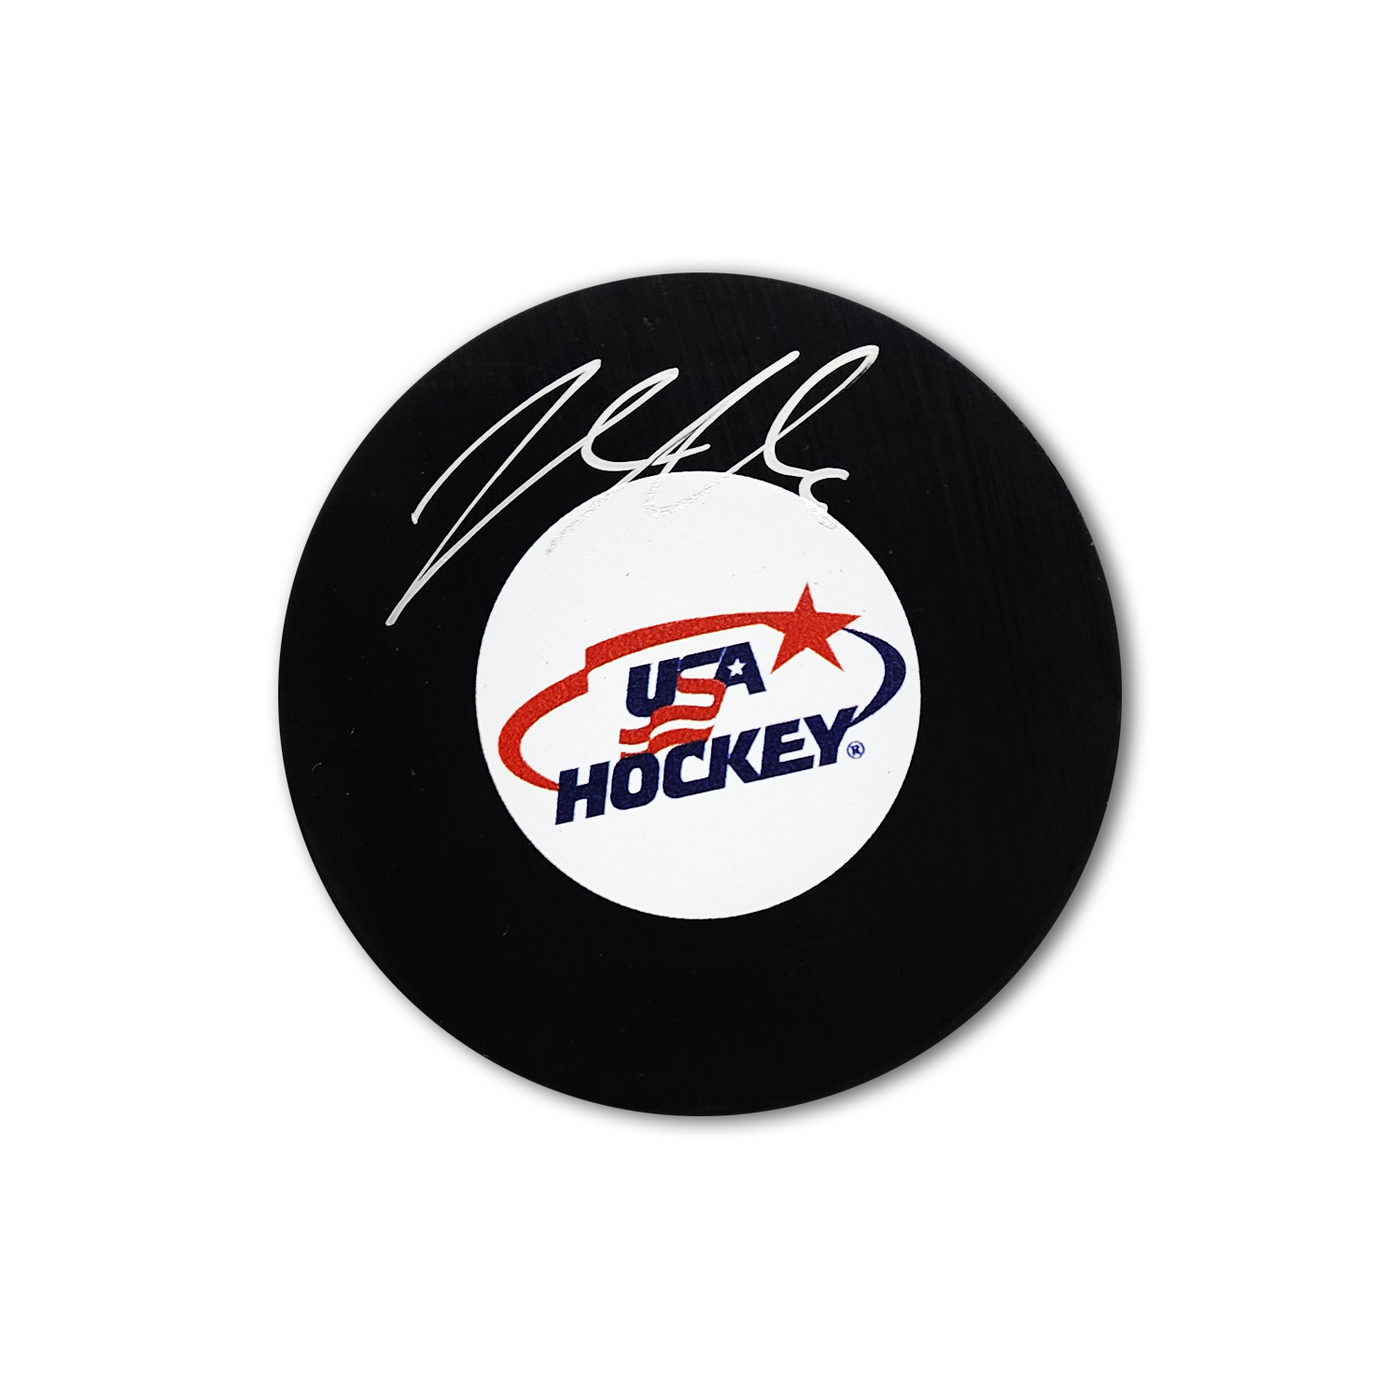 Jacob Trouba Autographed Team USA Hockey Puck